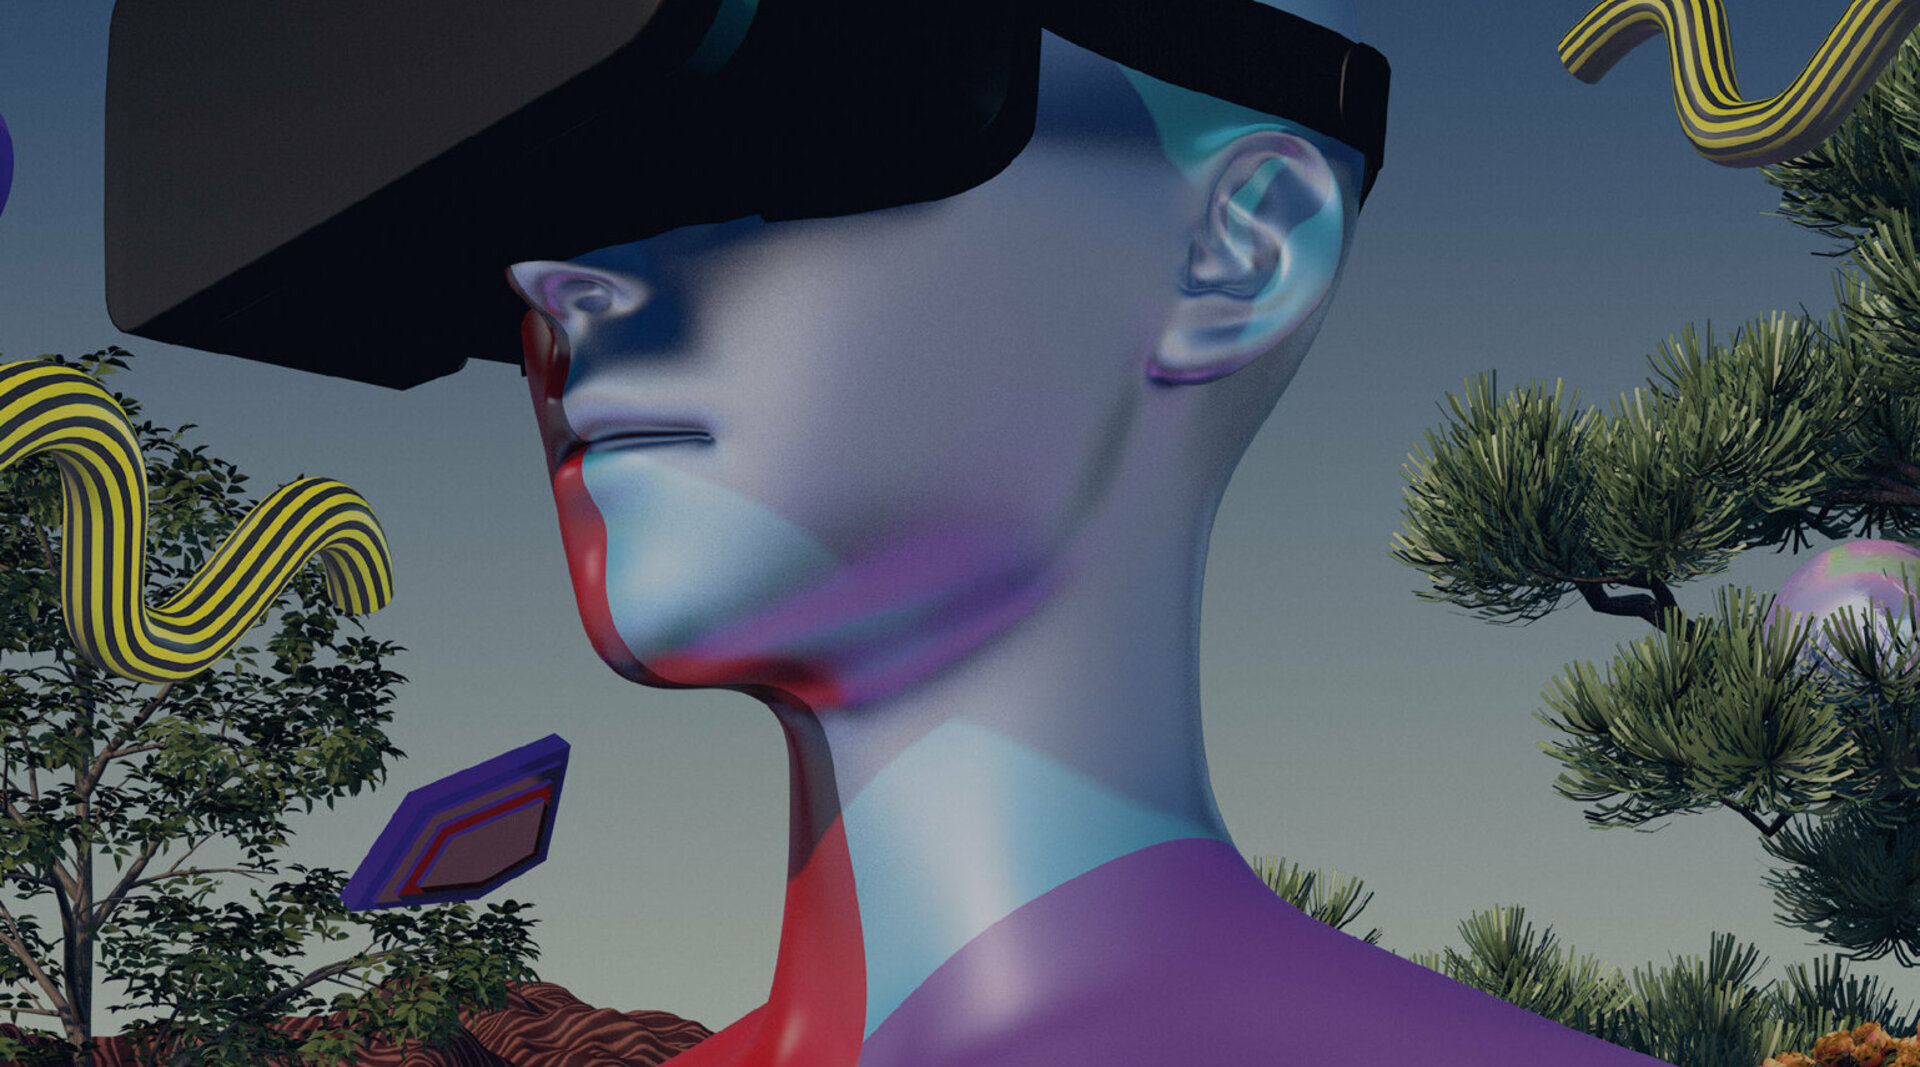 Man sieht das futuristische Titelbild des Verändernmagazins: Eine Person hat eine VR-Brille aufgesetzt